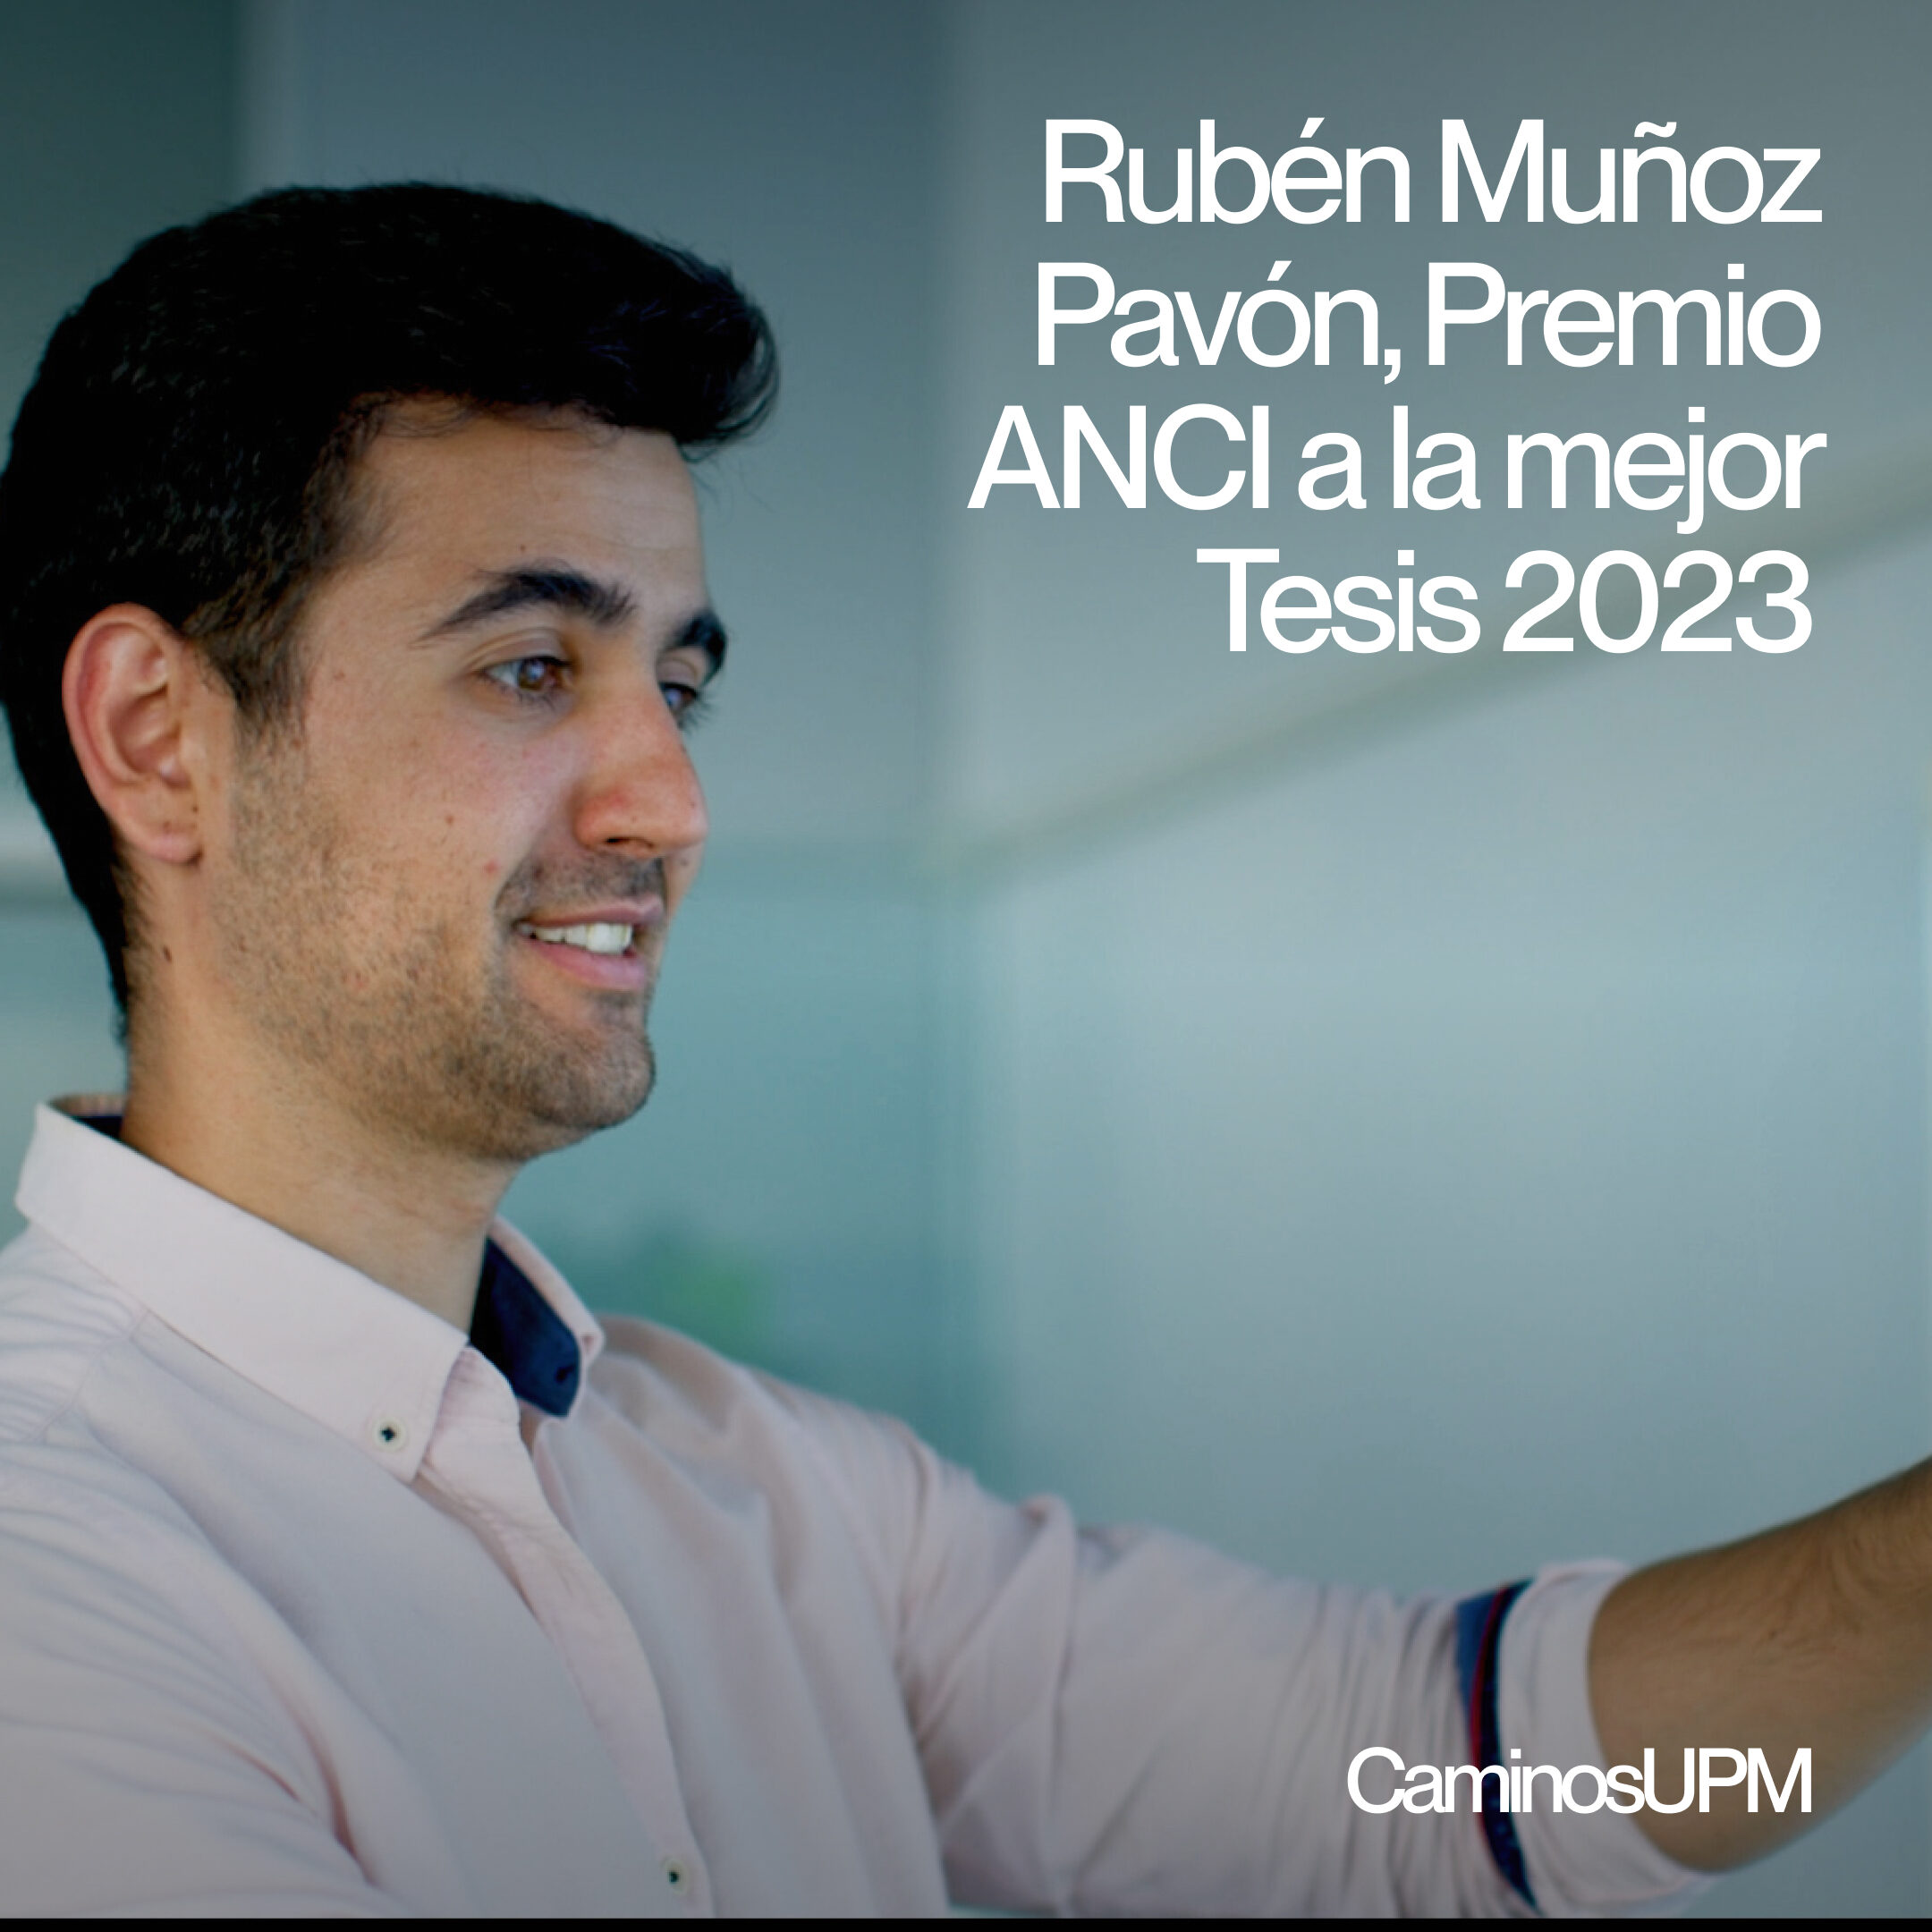 Rubén Muñoz Pavón premio ANCI a la mejor Tesis de 2023